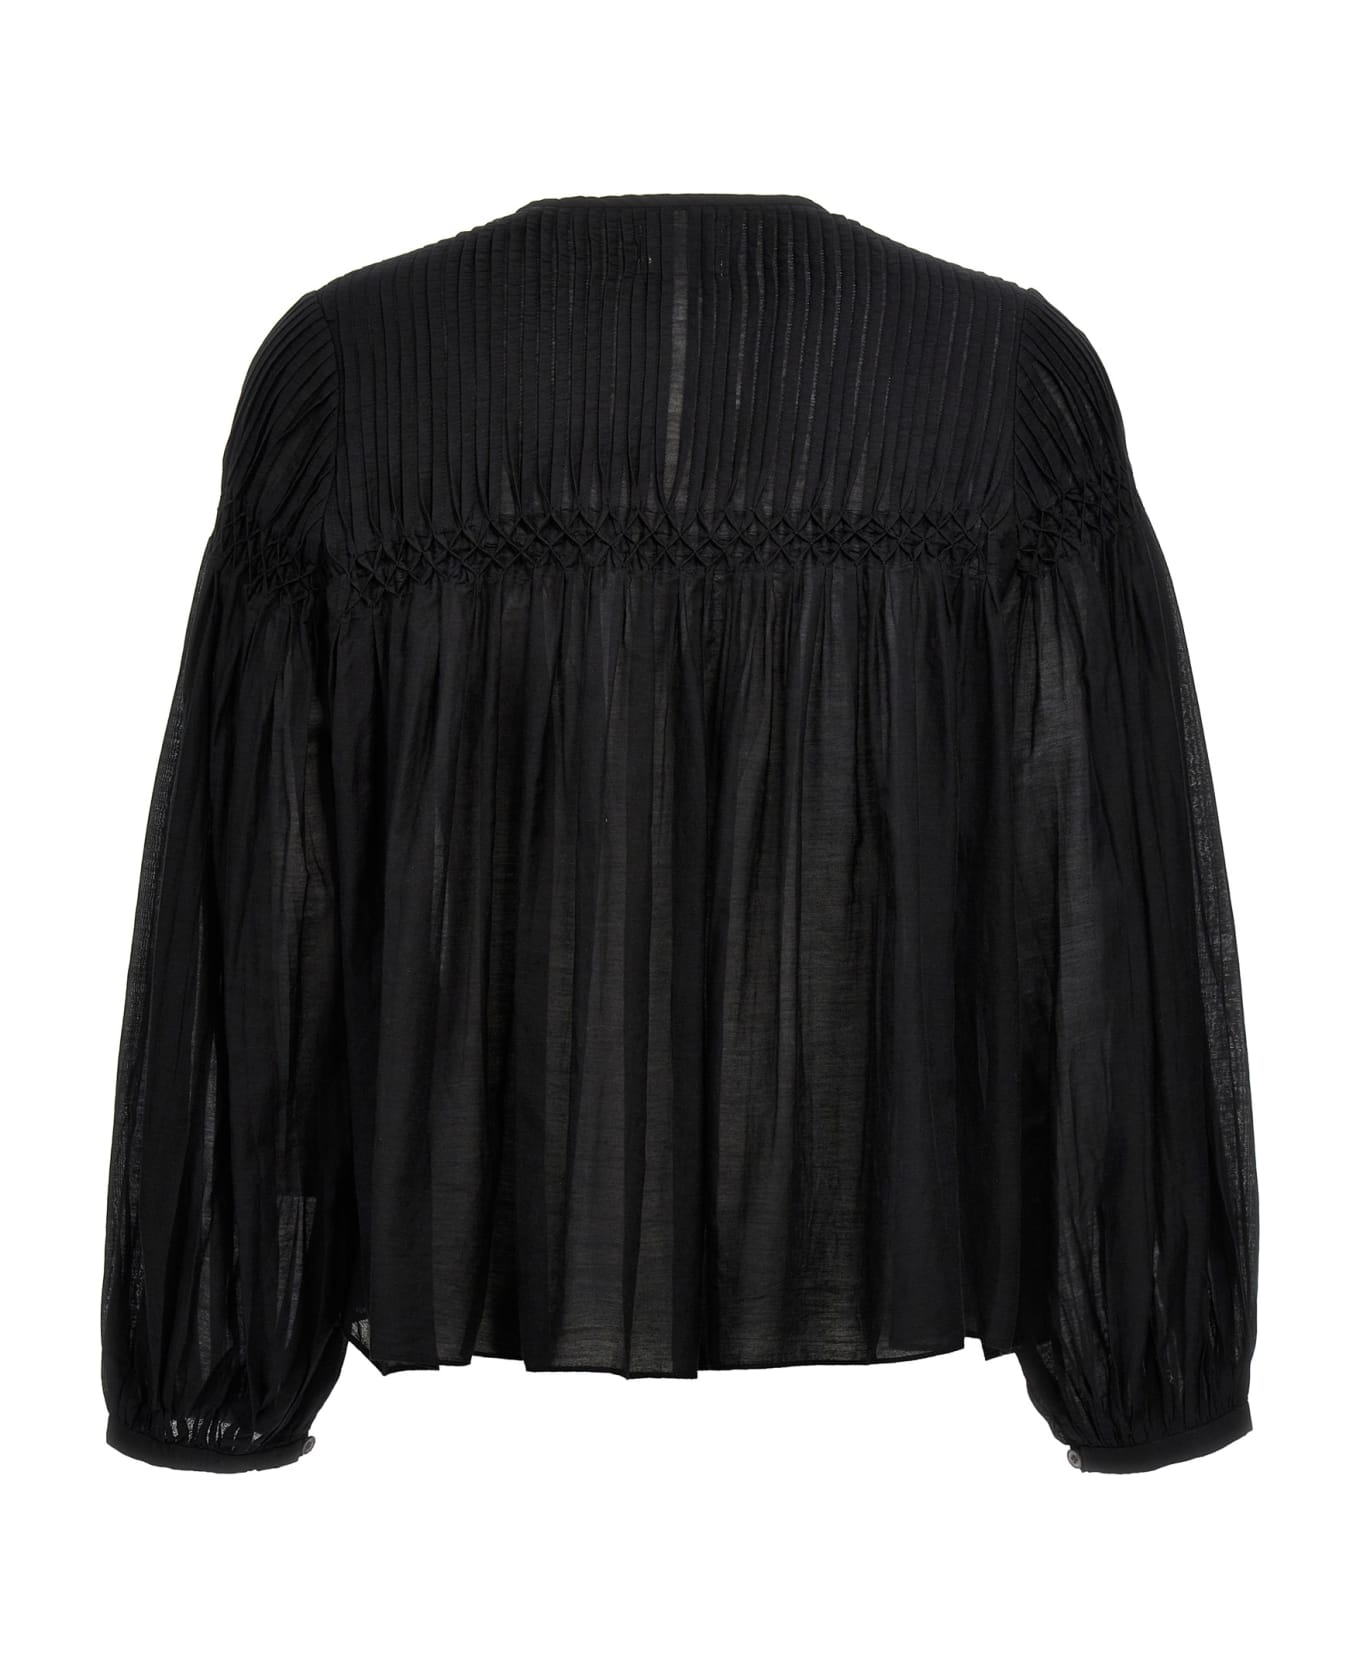 Marant Étoile 'abadi' Shirt - Black   ブラウス